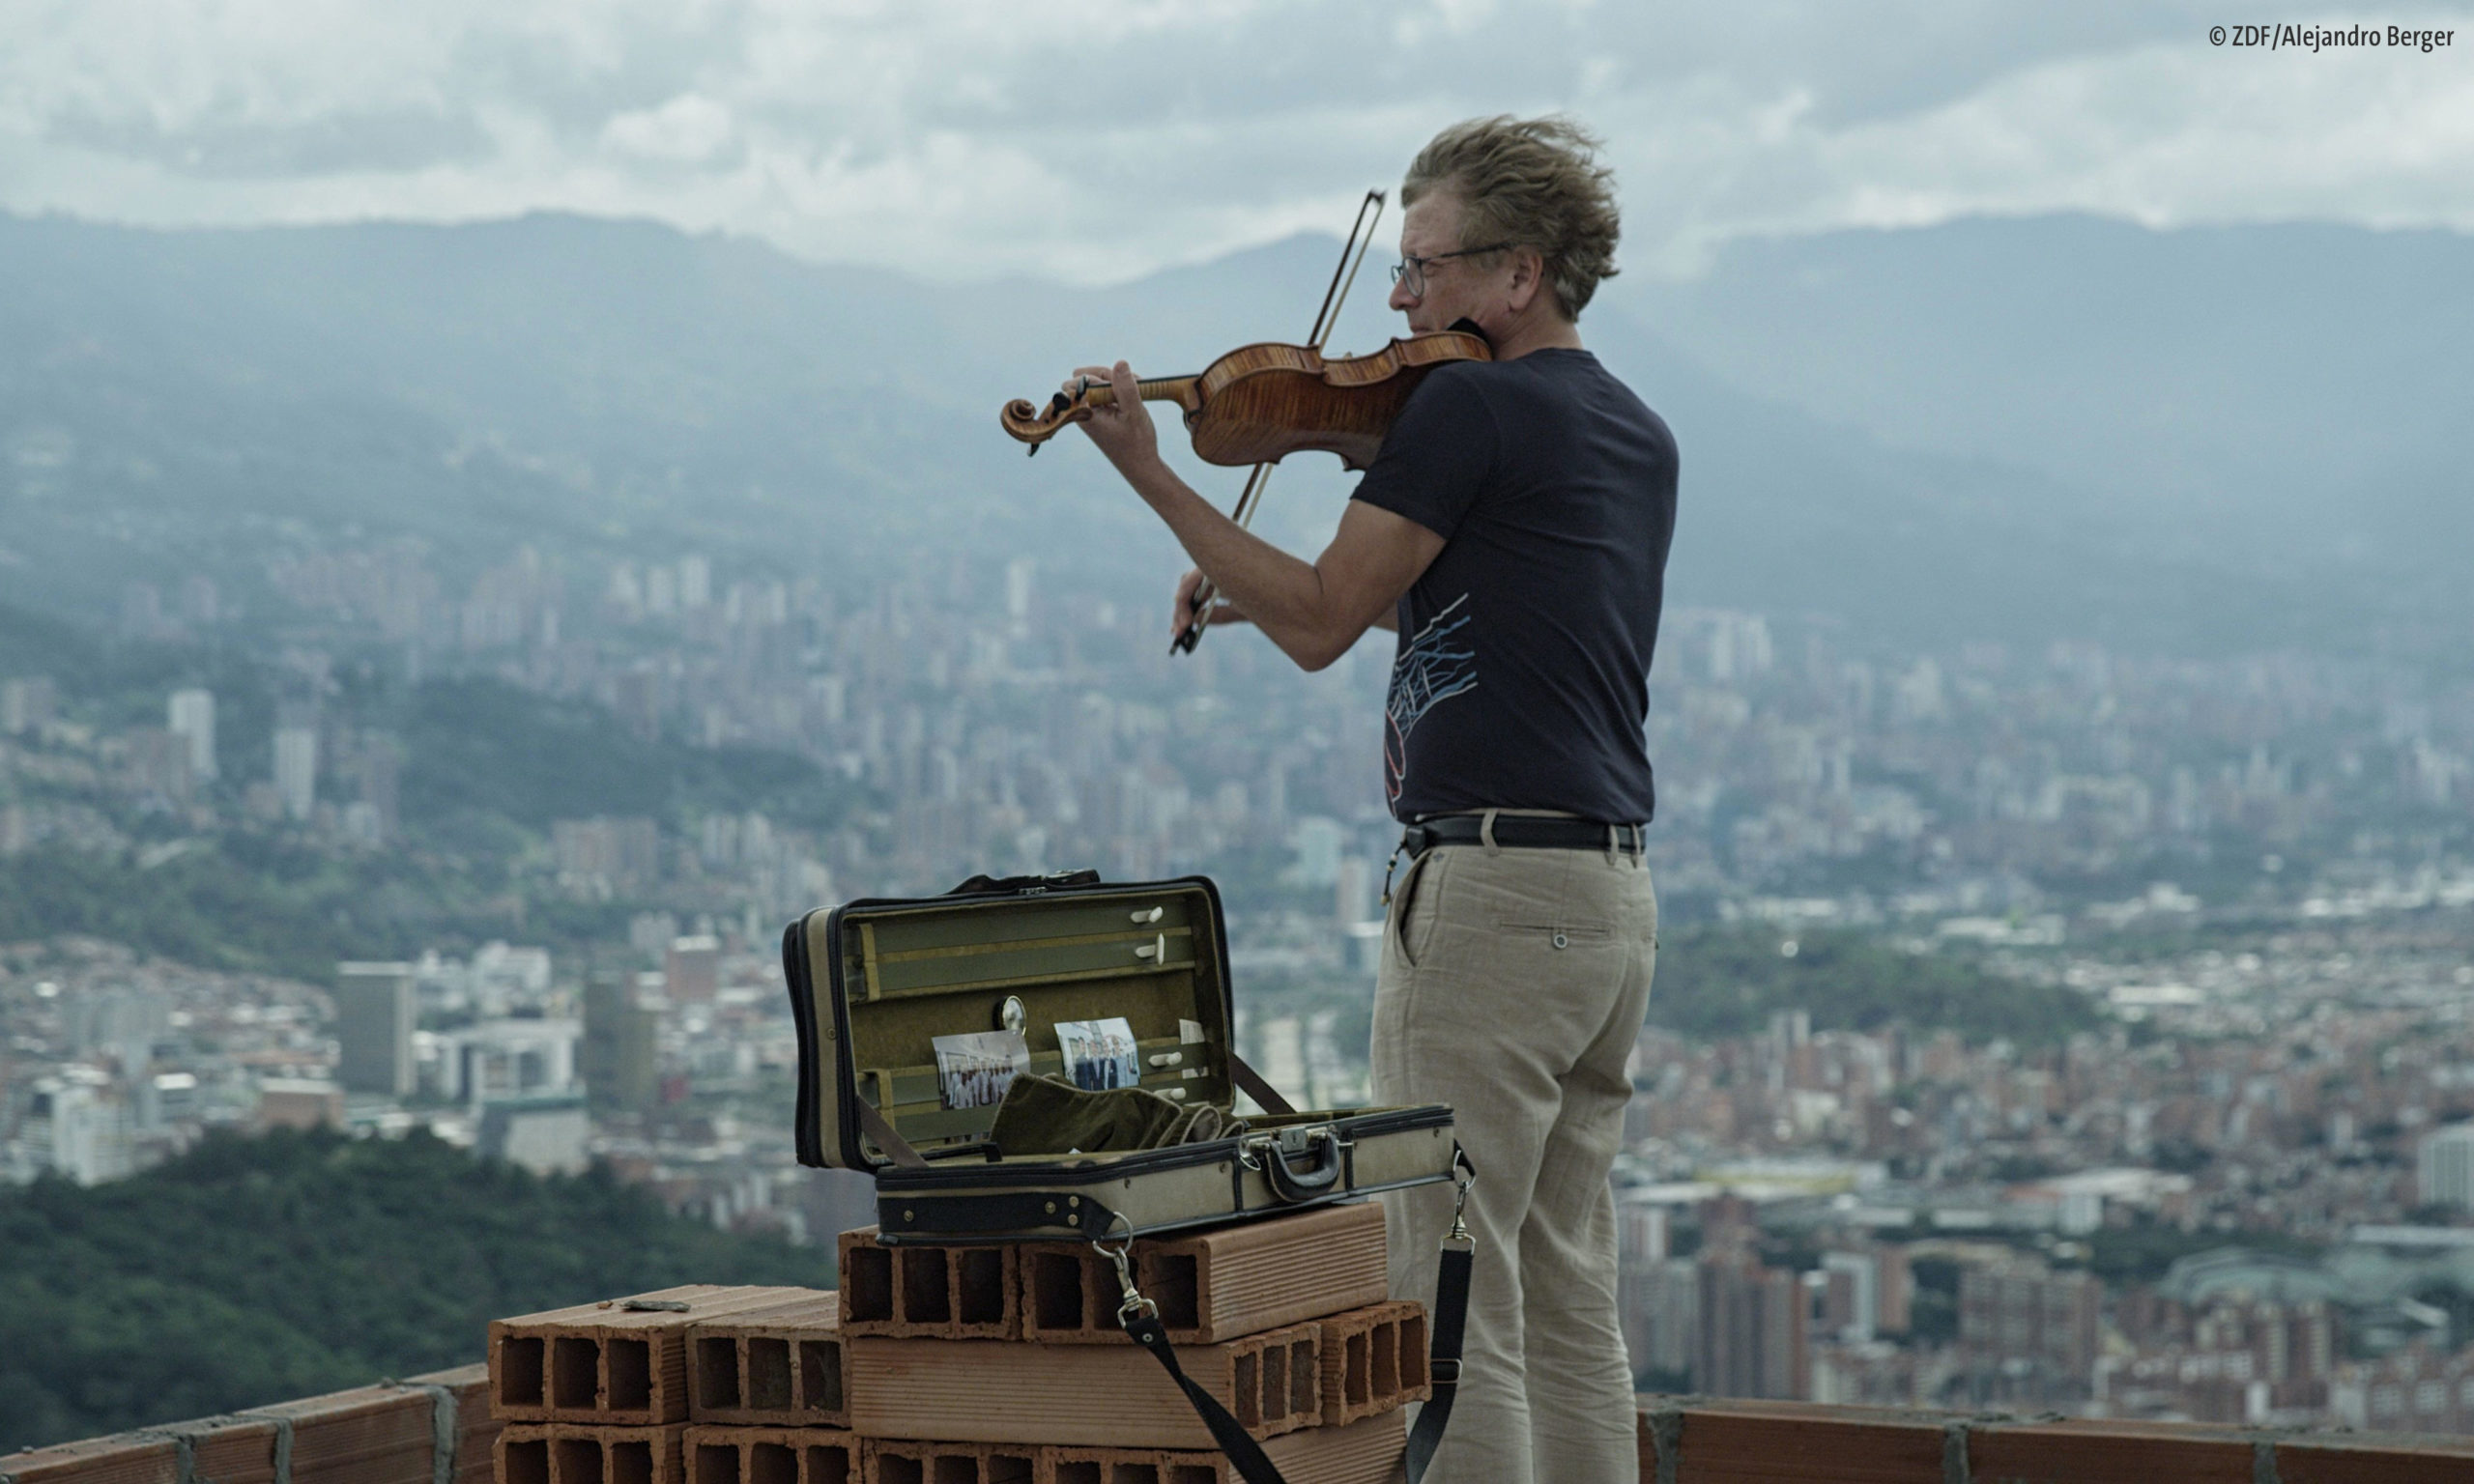 Filmstill aus "Diesen Kuss der ganzen Welt – Beethoven heute": Ein Mann steht auf einem Dach über der kolumbianischen Stadt Medellín und spielt Geige (© ZDF/Alejandro Berger)